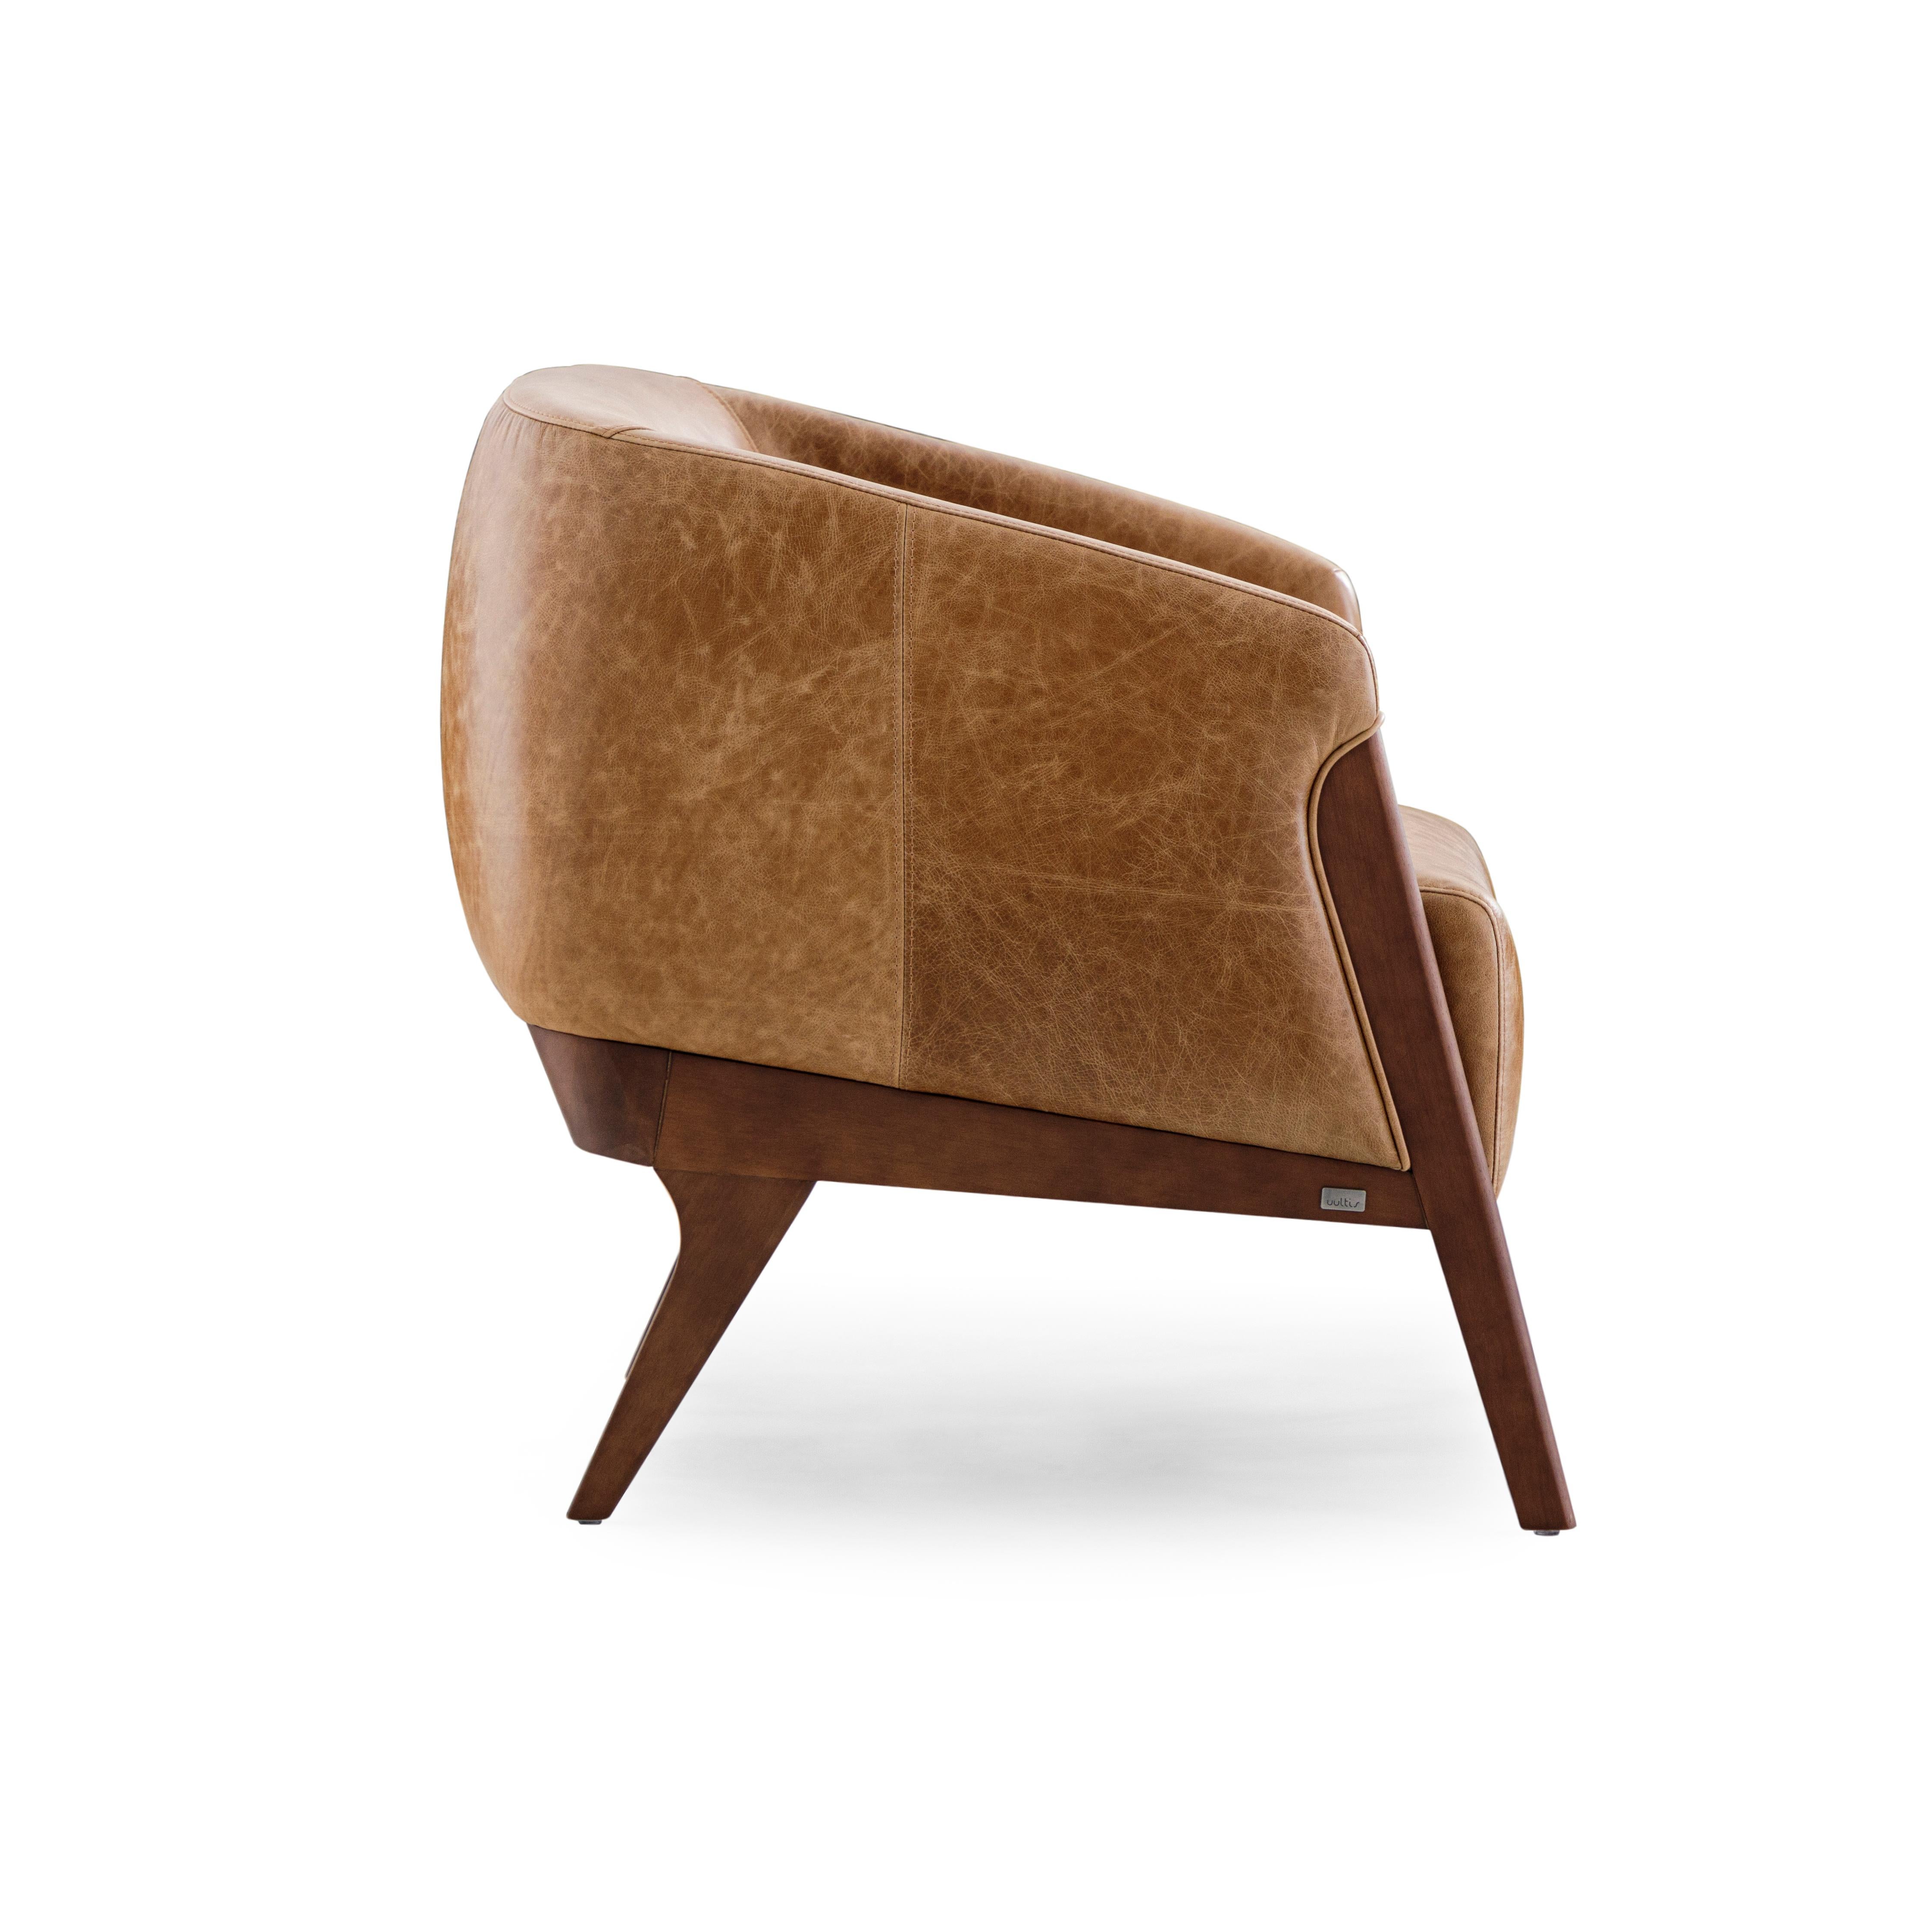 Le fauteuil ROOMS est un ajout accueillant à n'importe quelle pièce de votre décor, avec un magnifique revêtement en cuir marron et un cadre en bois de noyer. Ce fauteuil a été créé par notre incroyable équipe d'architectes et de designers d'Uultis